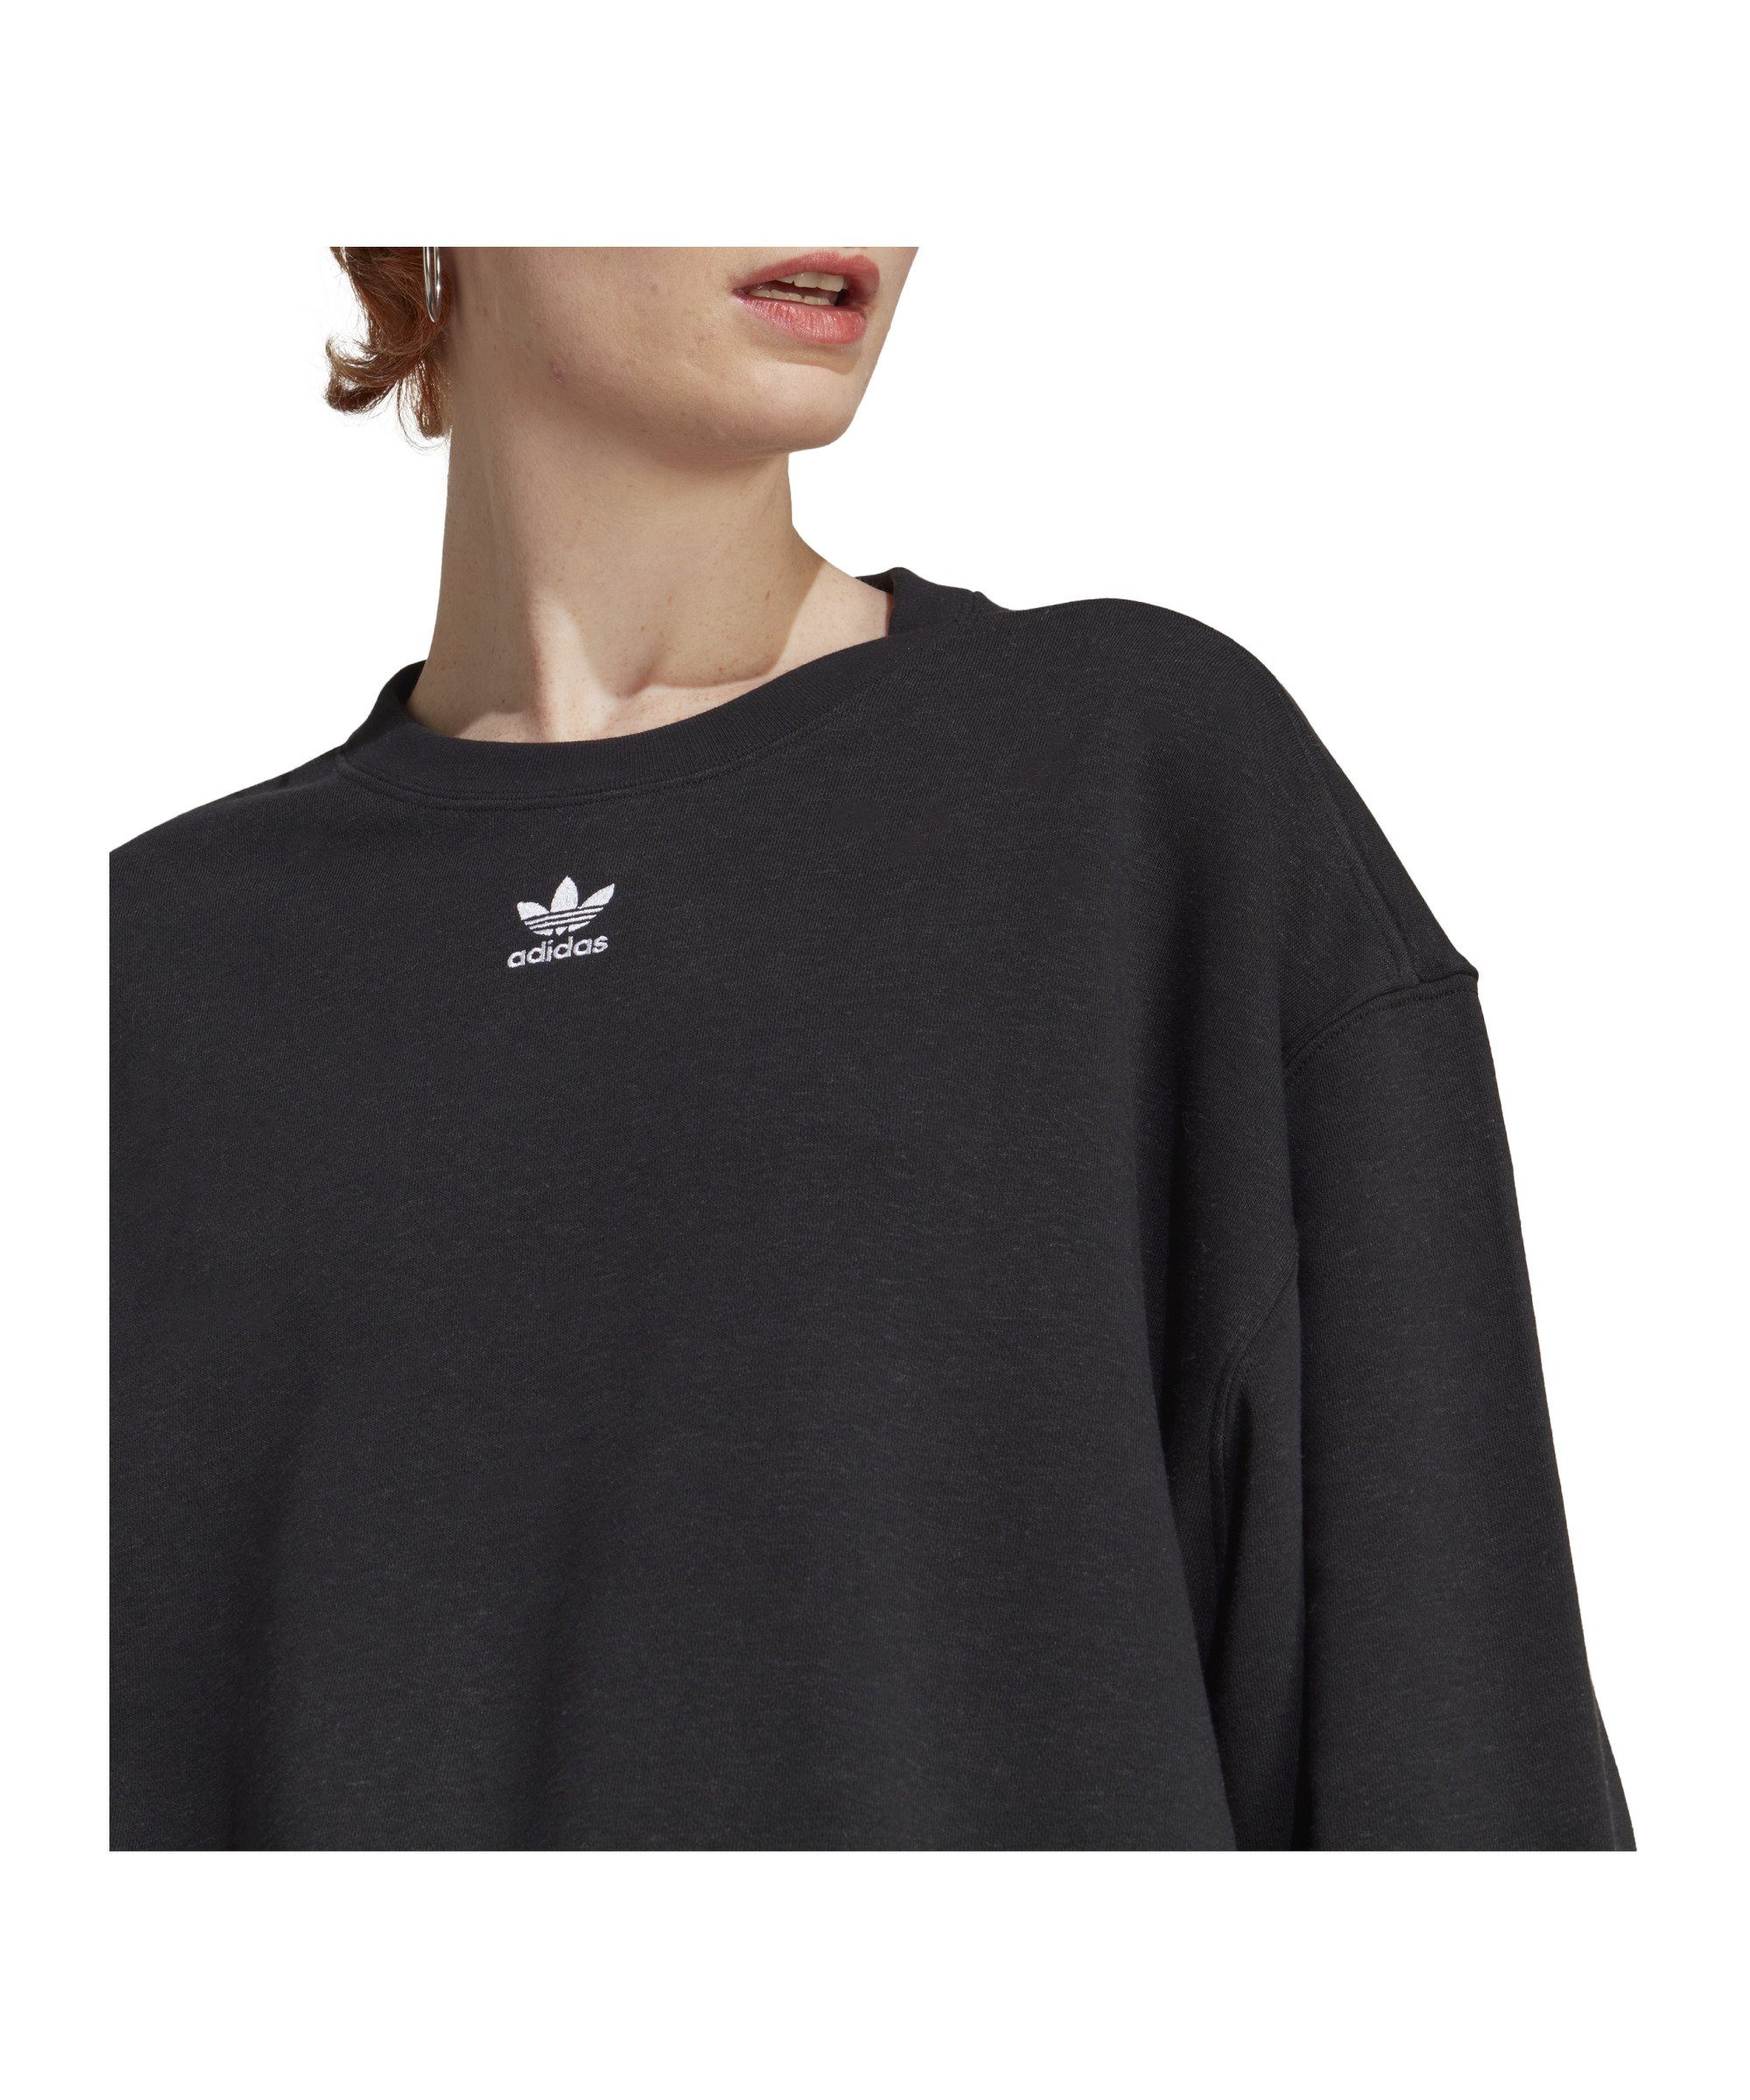 Ess. Originals schwarz Sweatshirt Sweater Damen adidas